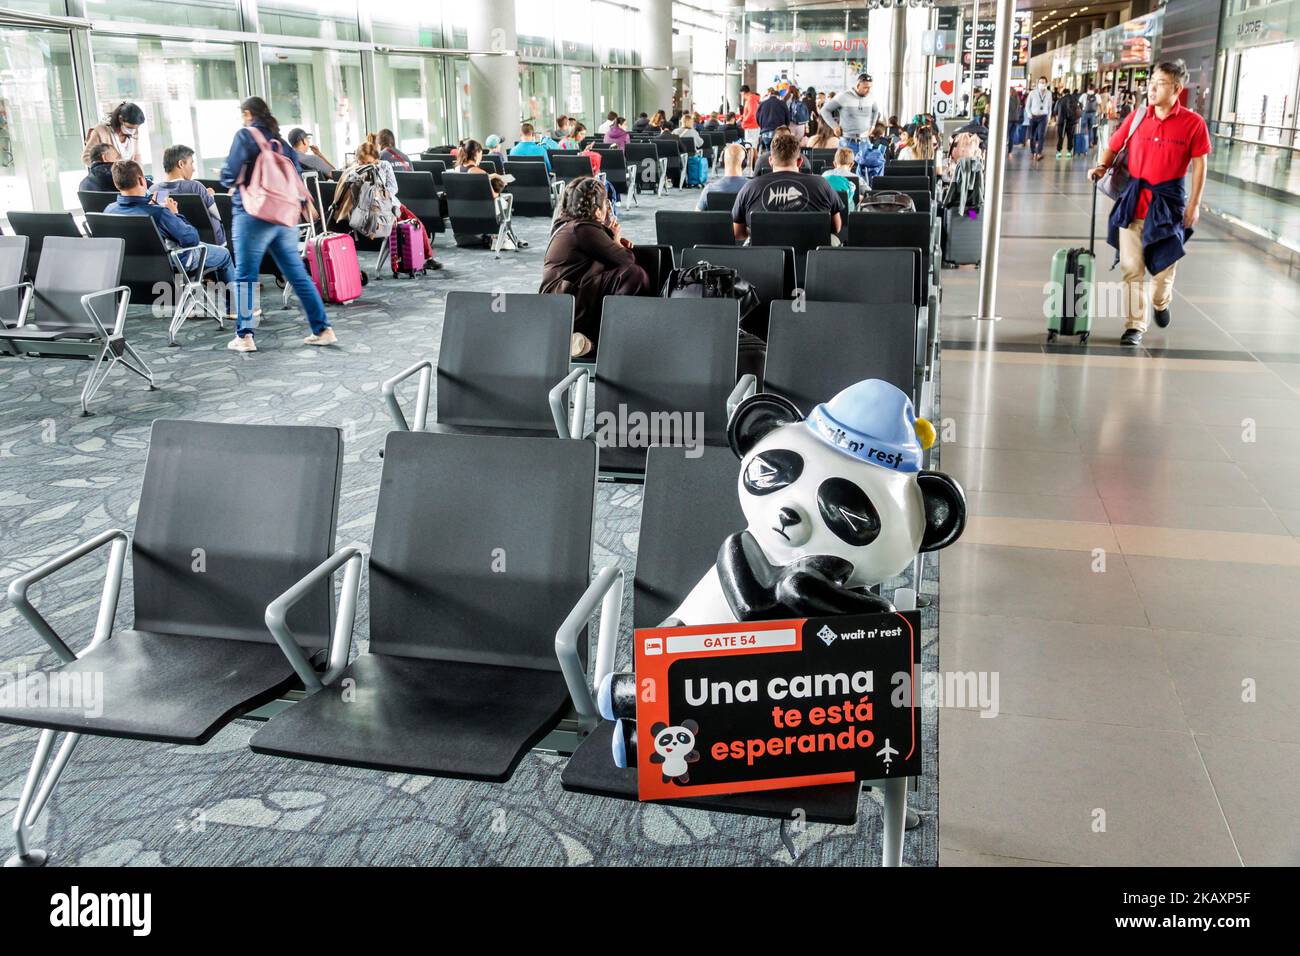 Bogotà Colombia, El Dorado Aeroporto Internazionale Aeropuerto Internacional El Dorado terminal concourse gate area interna, panda orso mascotte attendere Foto Stock